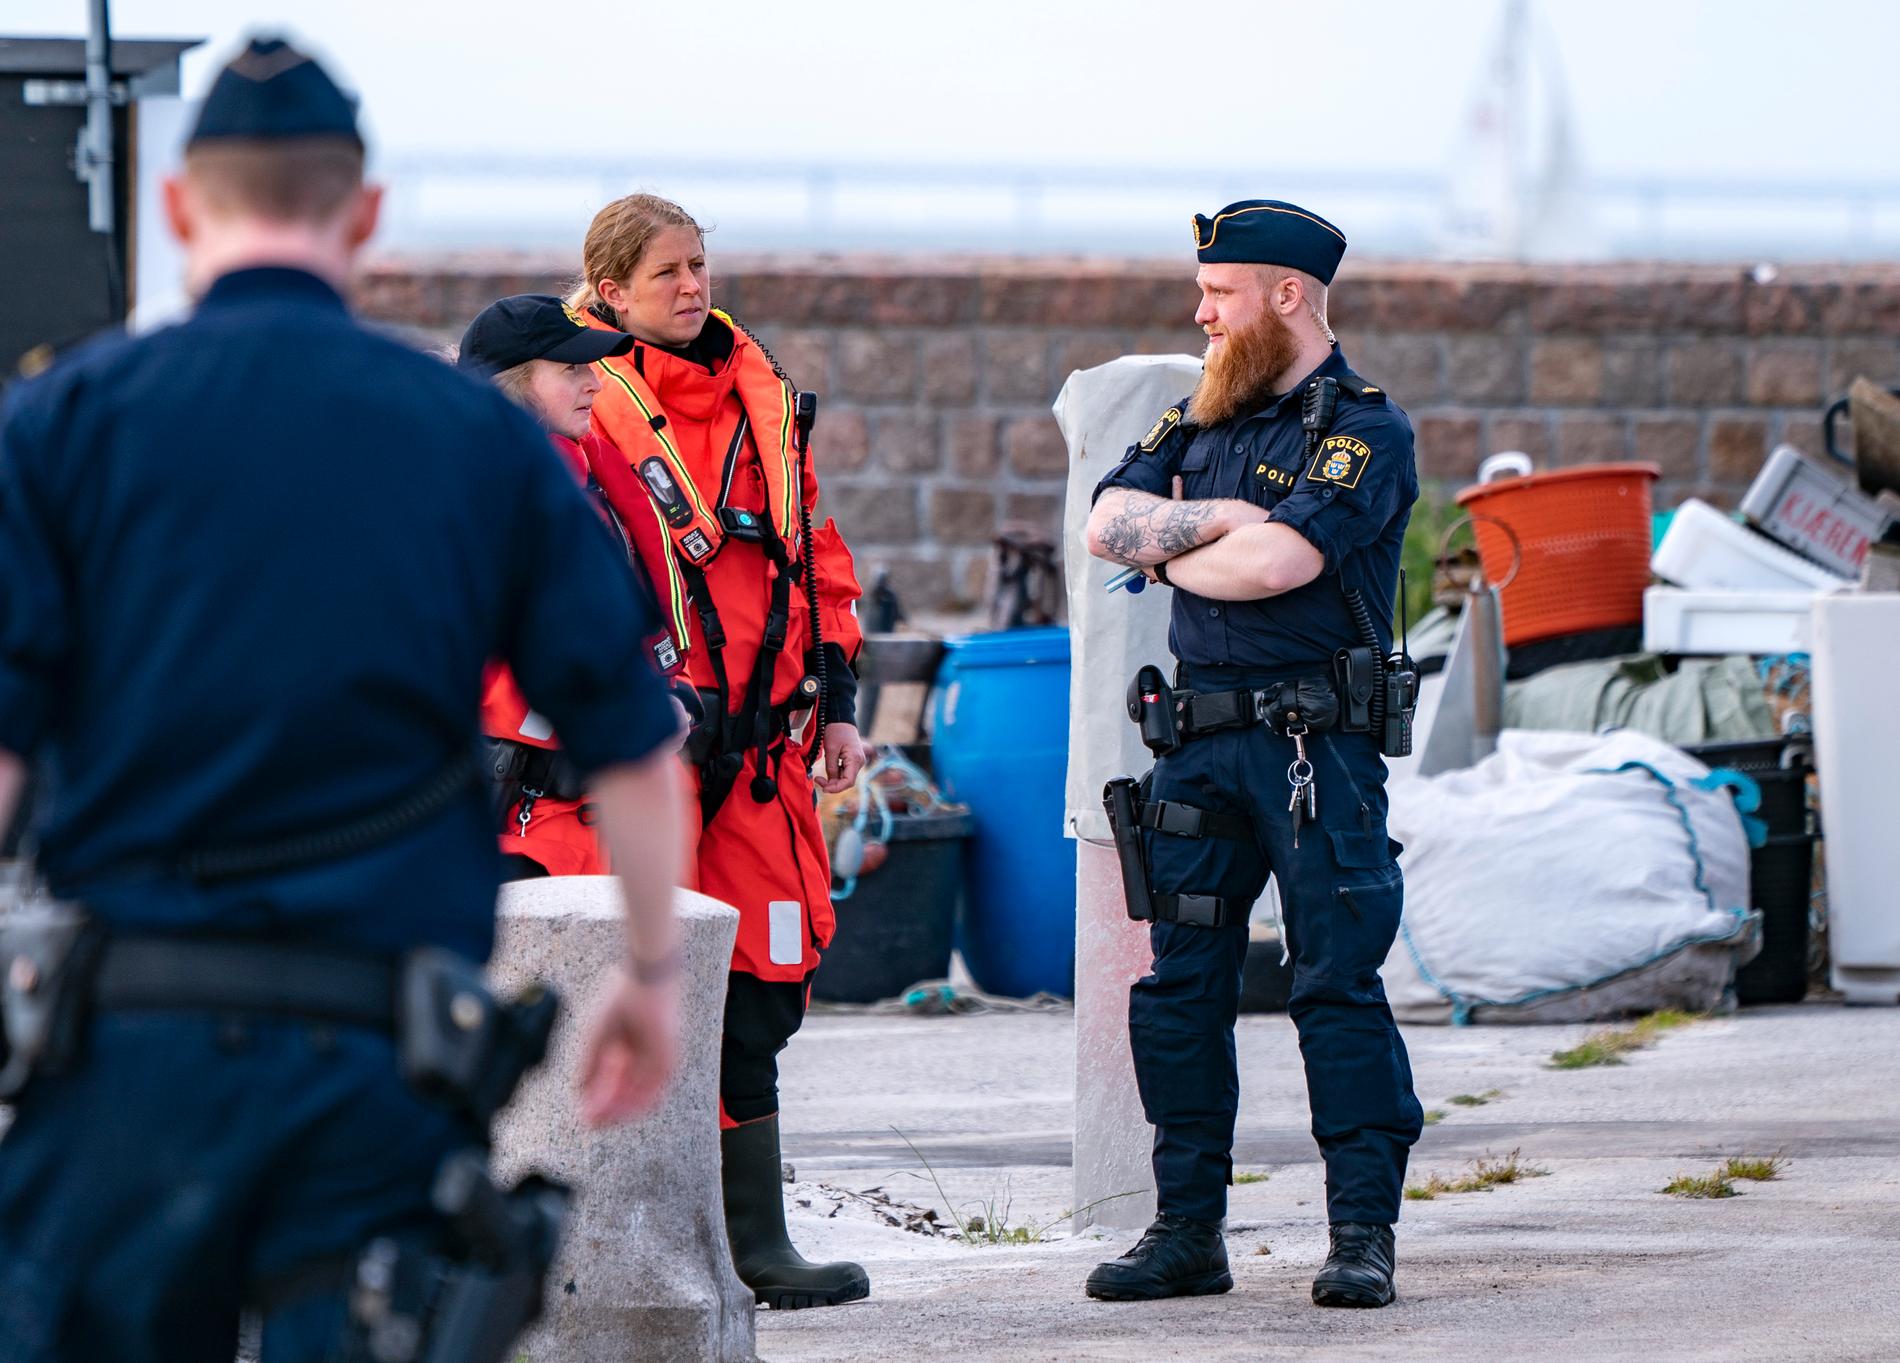 Polis och kustbevakning på plats efter att två båtar har krockat utanför hamnen Skanör på fredagskvällen.